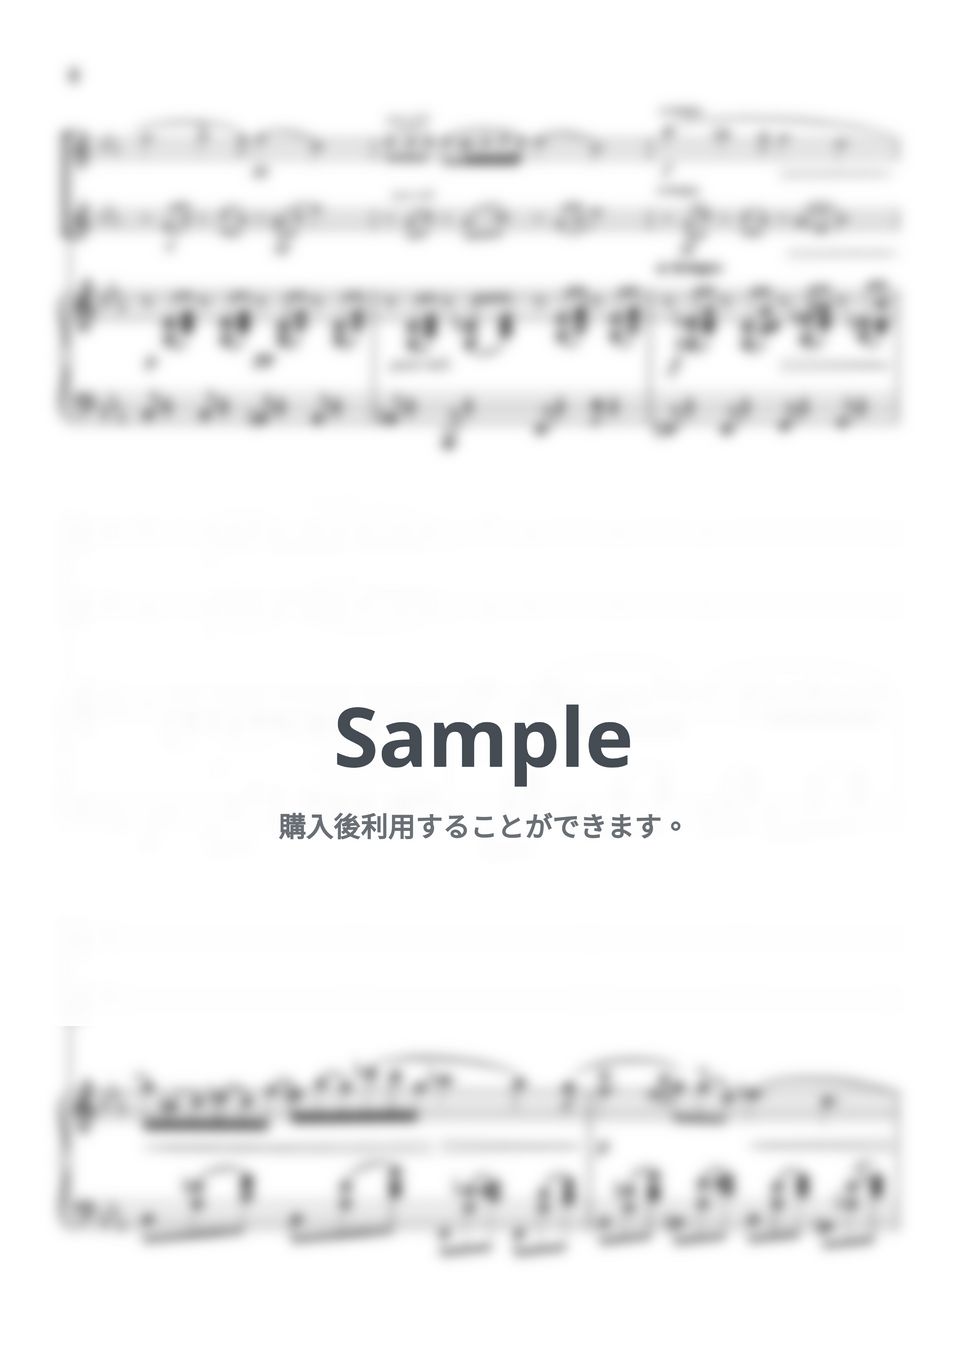 ショパン - ノクターン第2番 (ピアノトリオ/オーボエデュオ) by pfkaori